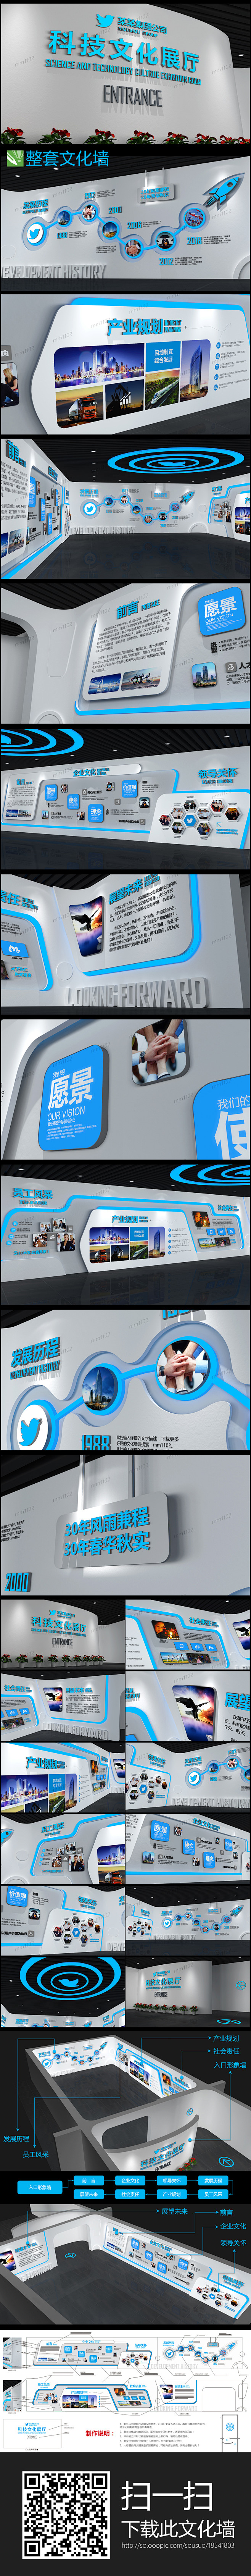 企业文化墙科技展厅展馆设计3d效果图素材...